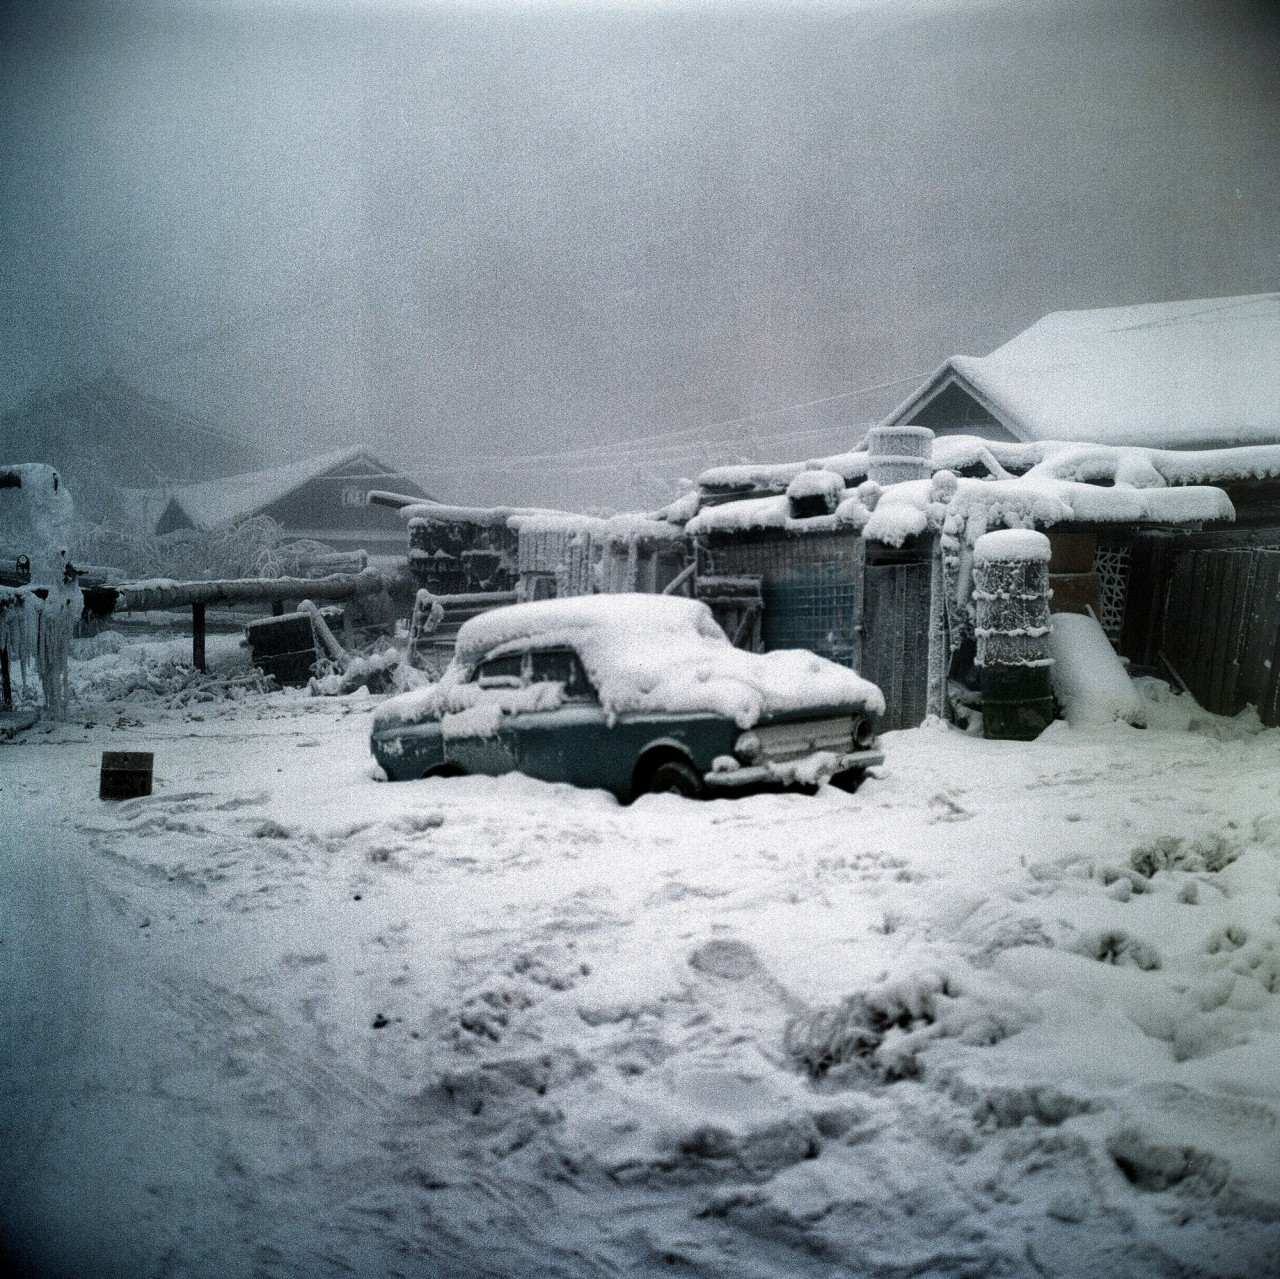 કેનેડાનો સૌથી ઠંડો દિવસ અને હાડકાને ઠંડક આપનારી સુંદરતા: સ્નેગ, યુકોન 1947માં 1ના શિયાળાની એક સ્થિર વાર્તા